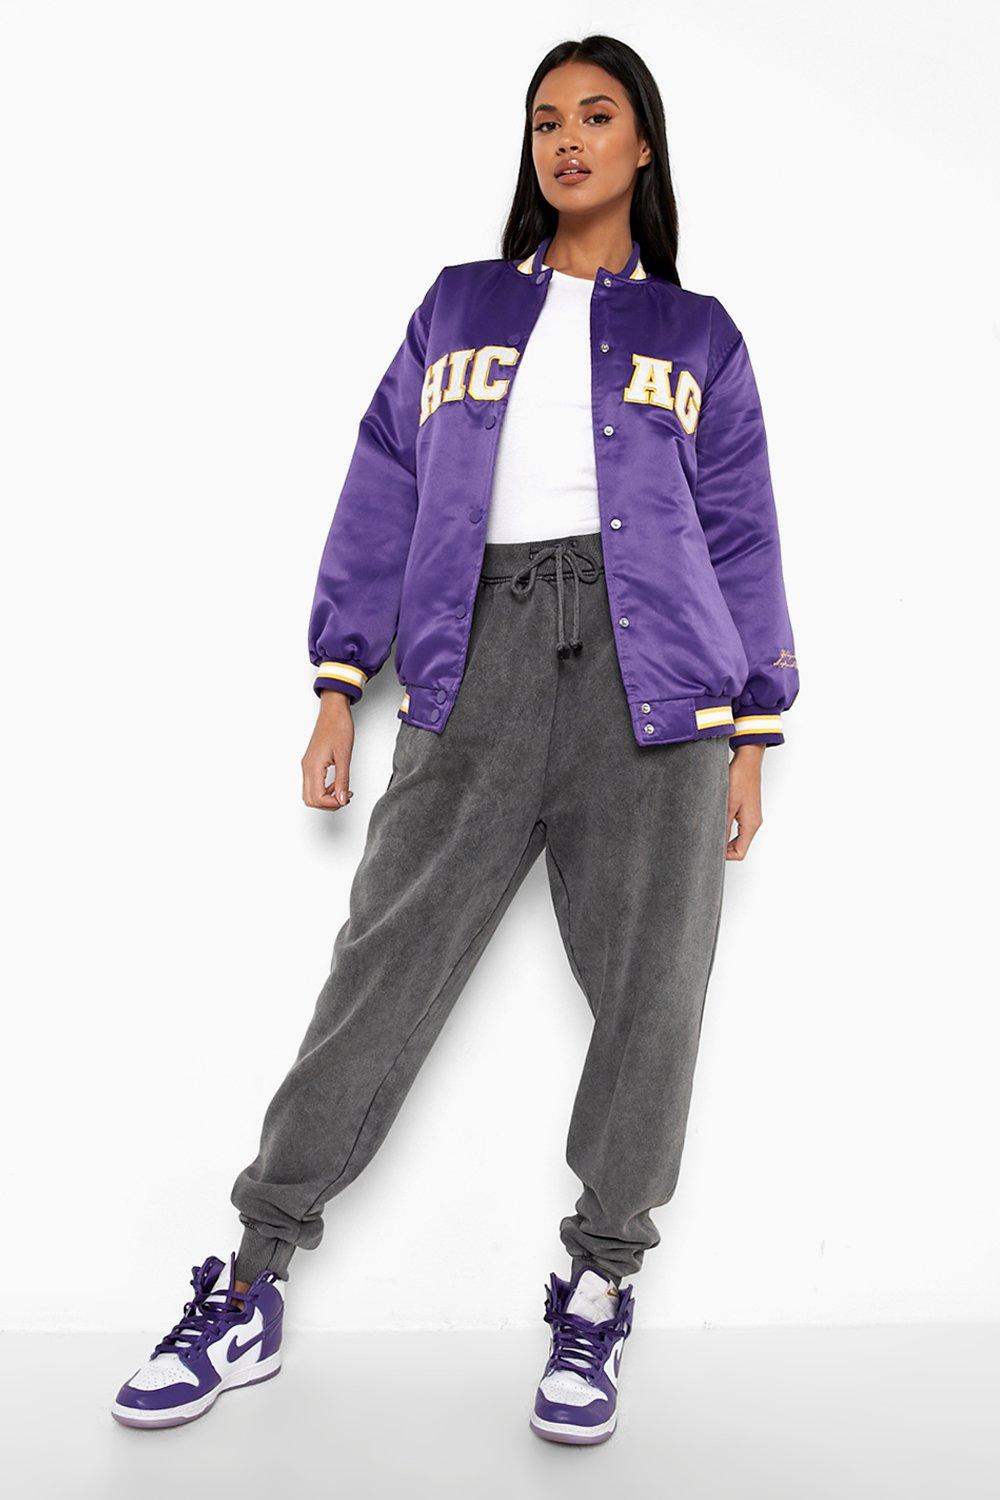 Purple Varsity Jacket for Women - Deal20one